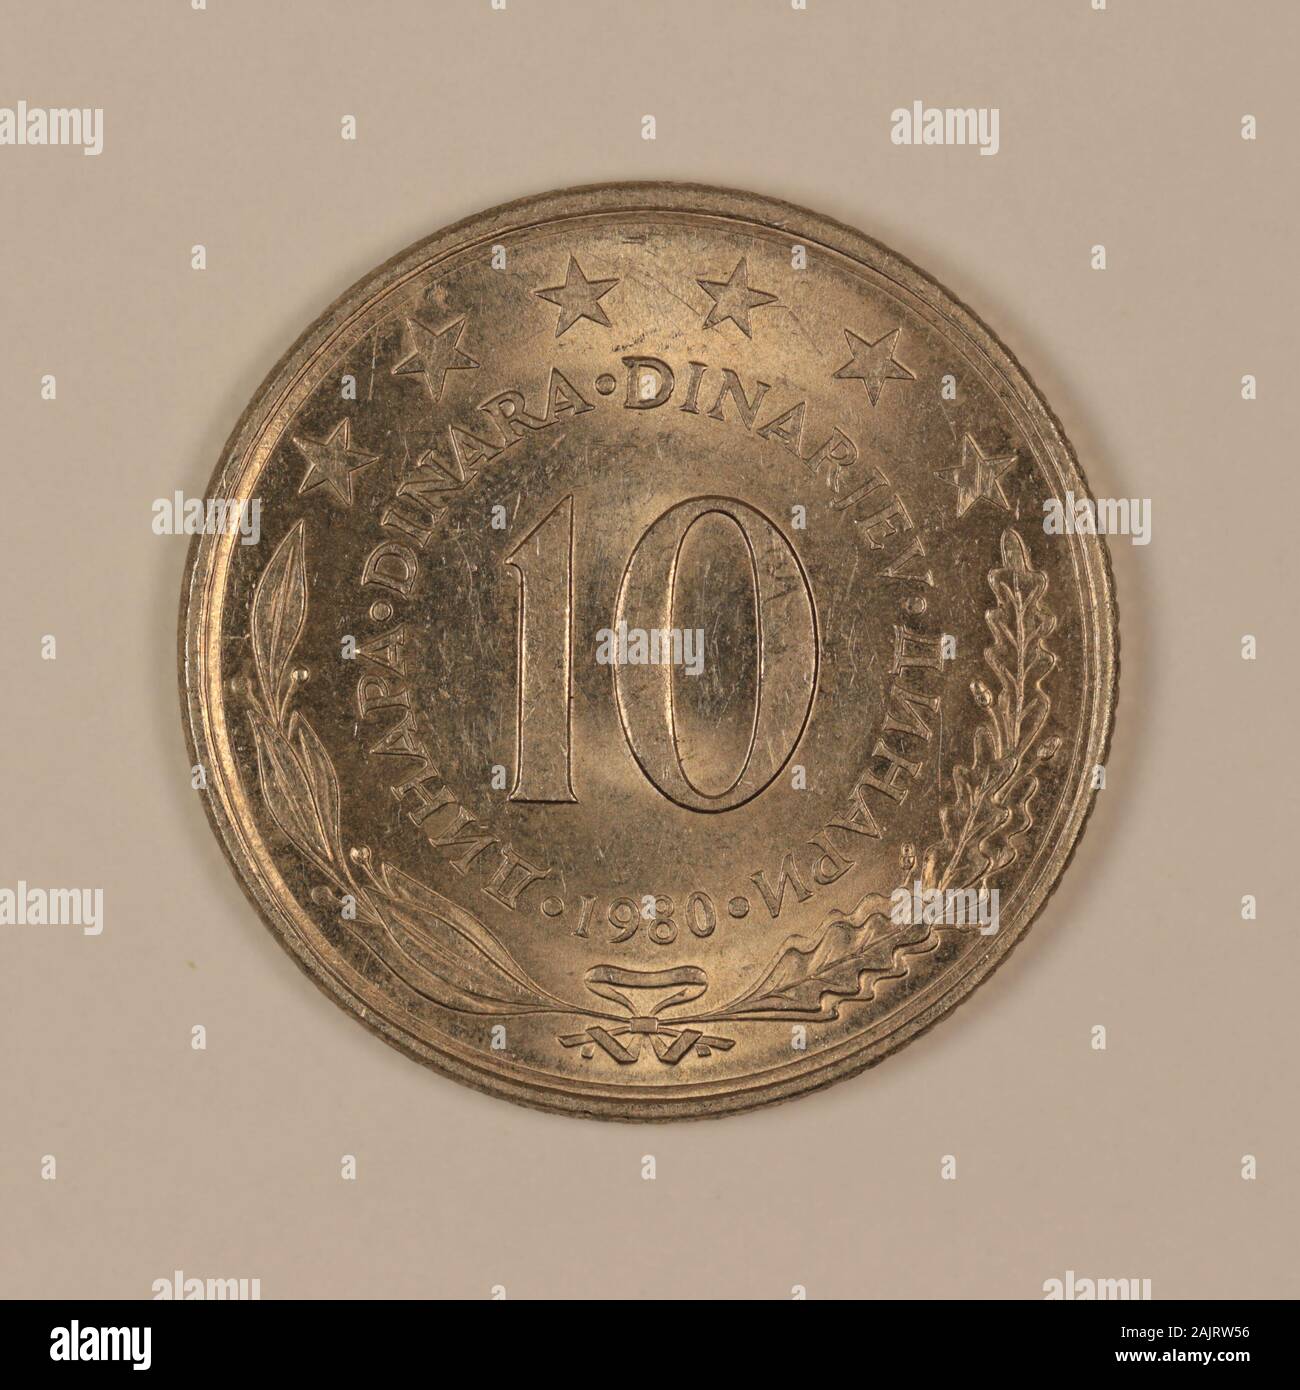 Vorderseite einer ehemaligen Jugoslawischen 10 Dinar Münze Stock Photo